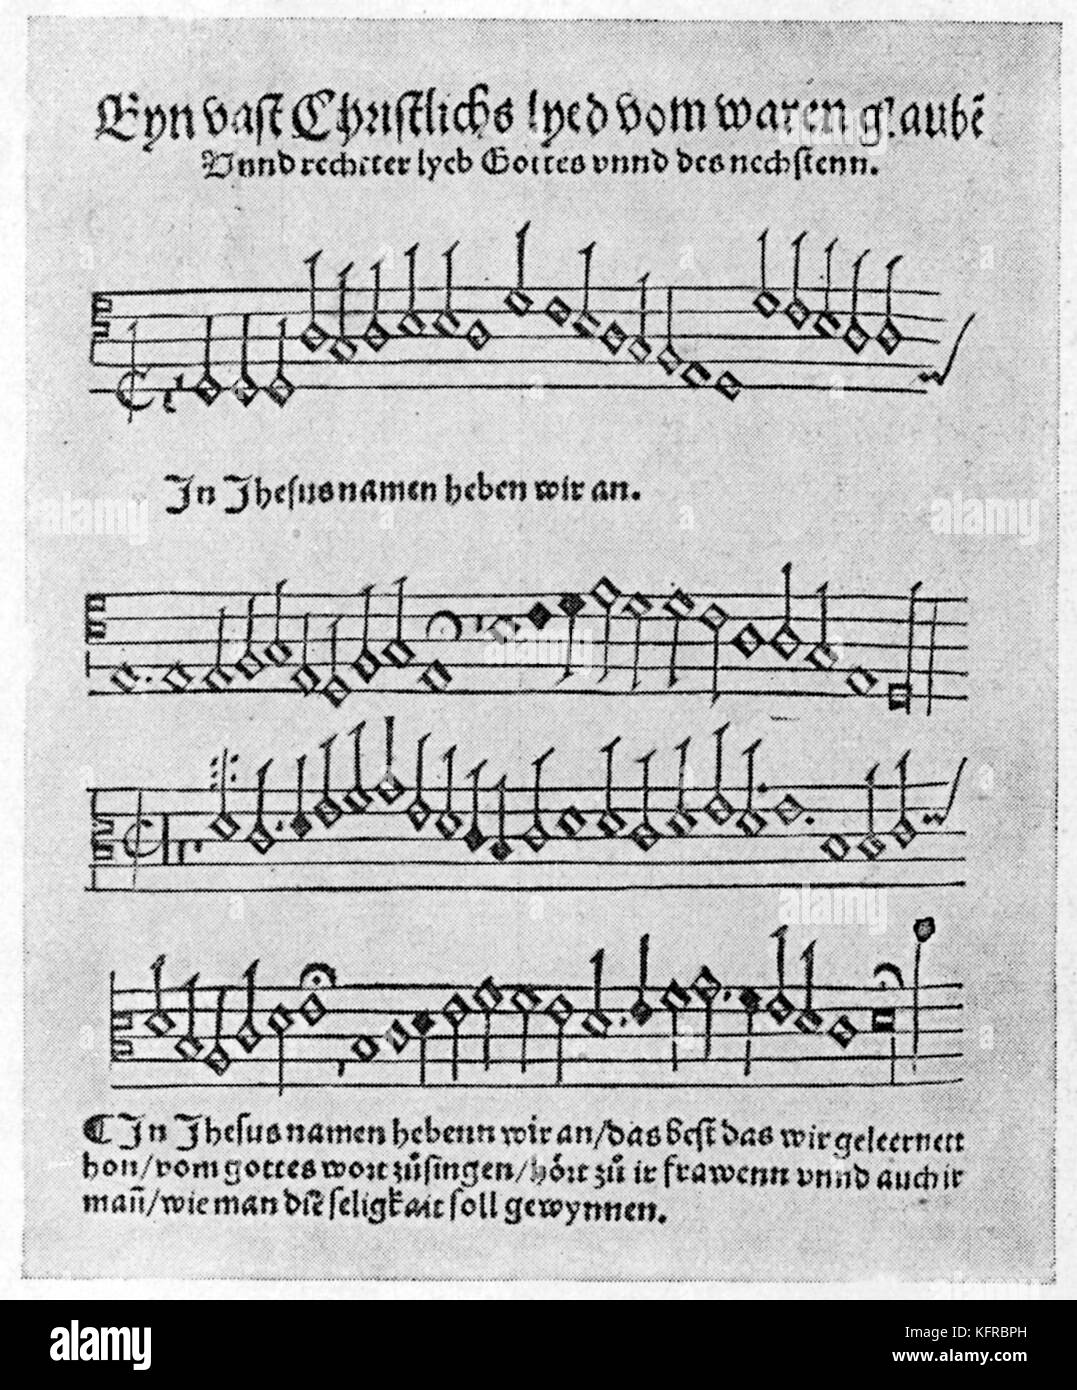 Ergebnis aus der älteste Lutherische Gesangbuch", Etlich christlich Lobgesang'. Wittenberg, 1523, Georg Rhau. Stockfoto